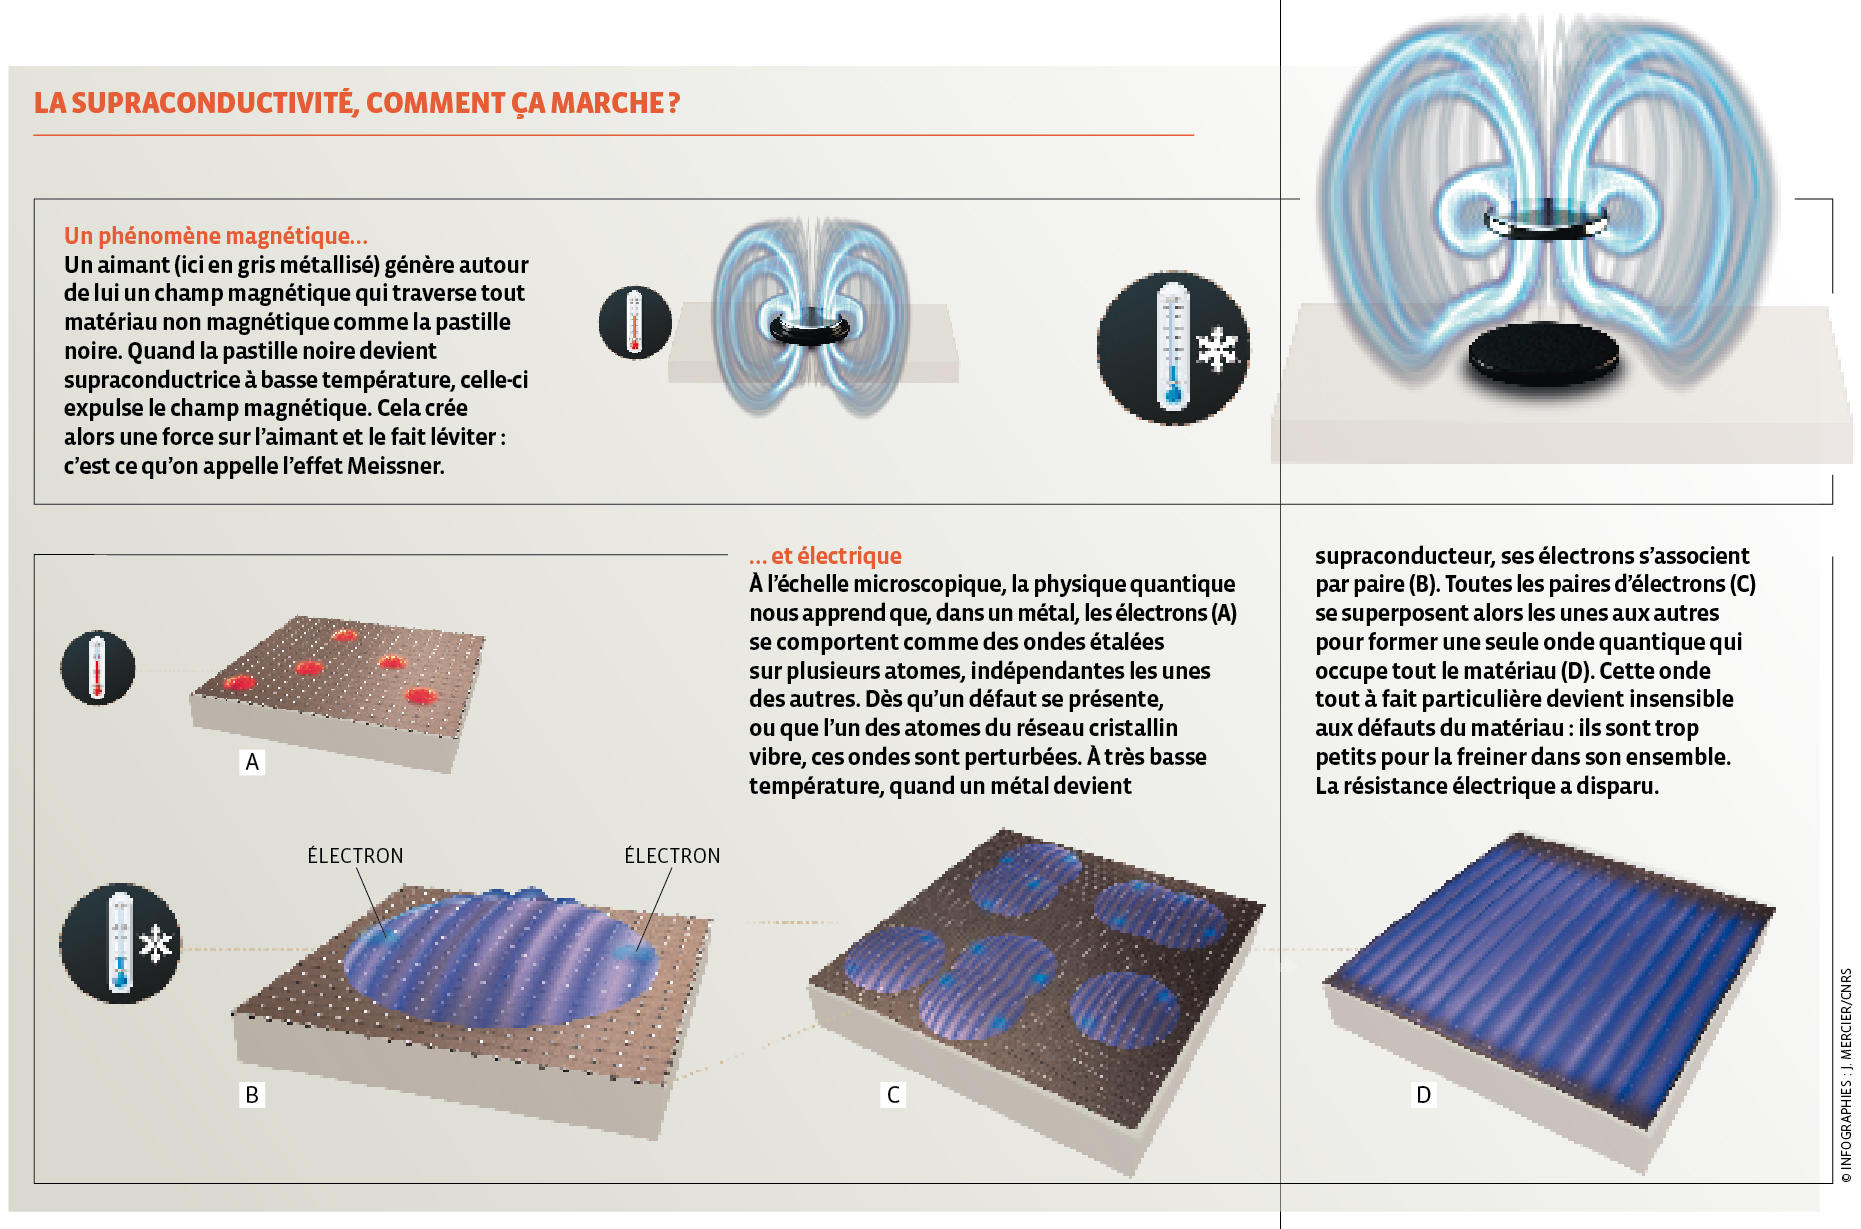 La supraconductivité expliquée en infographie.